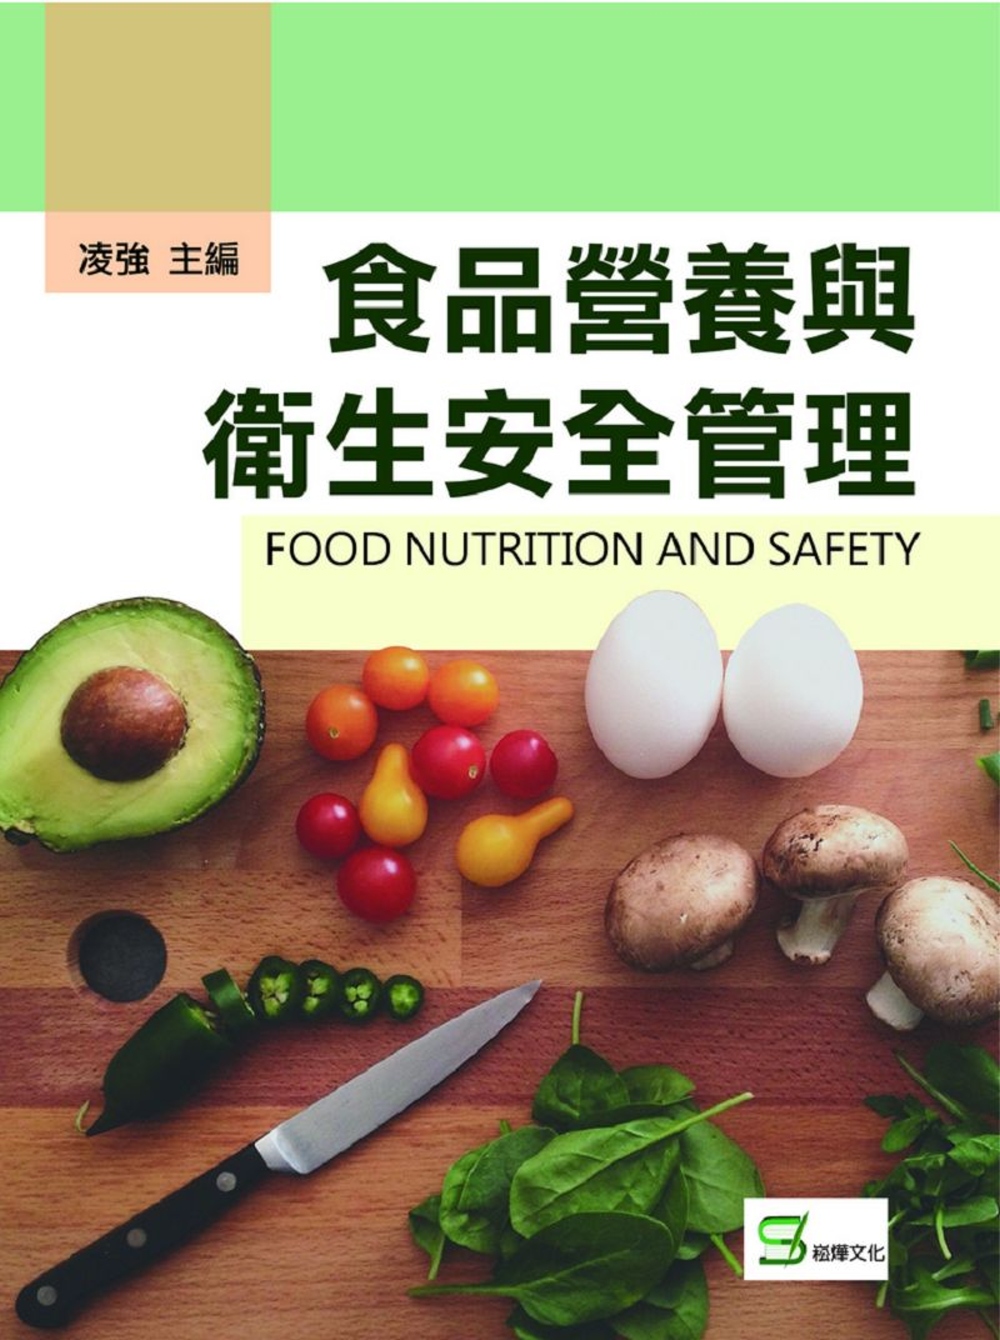 食品營養與衛生安全管理